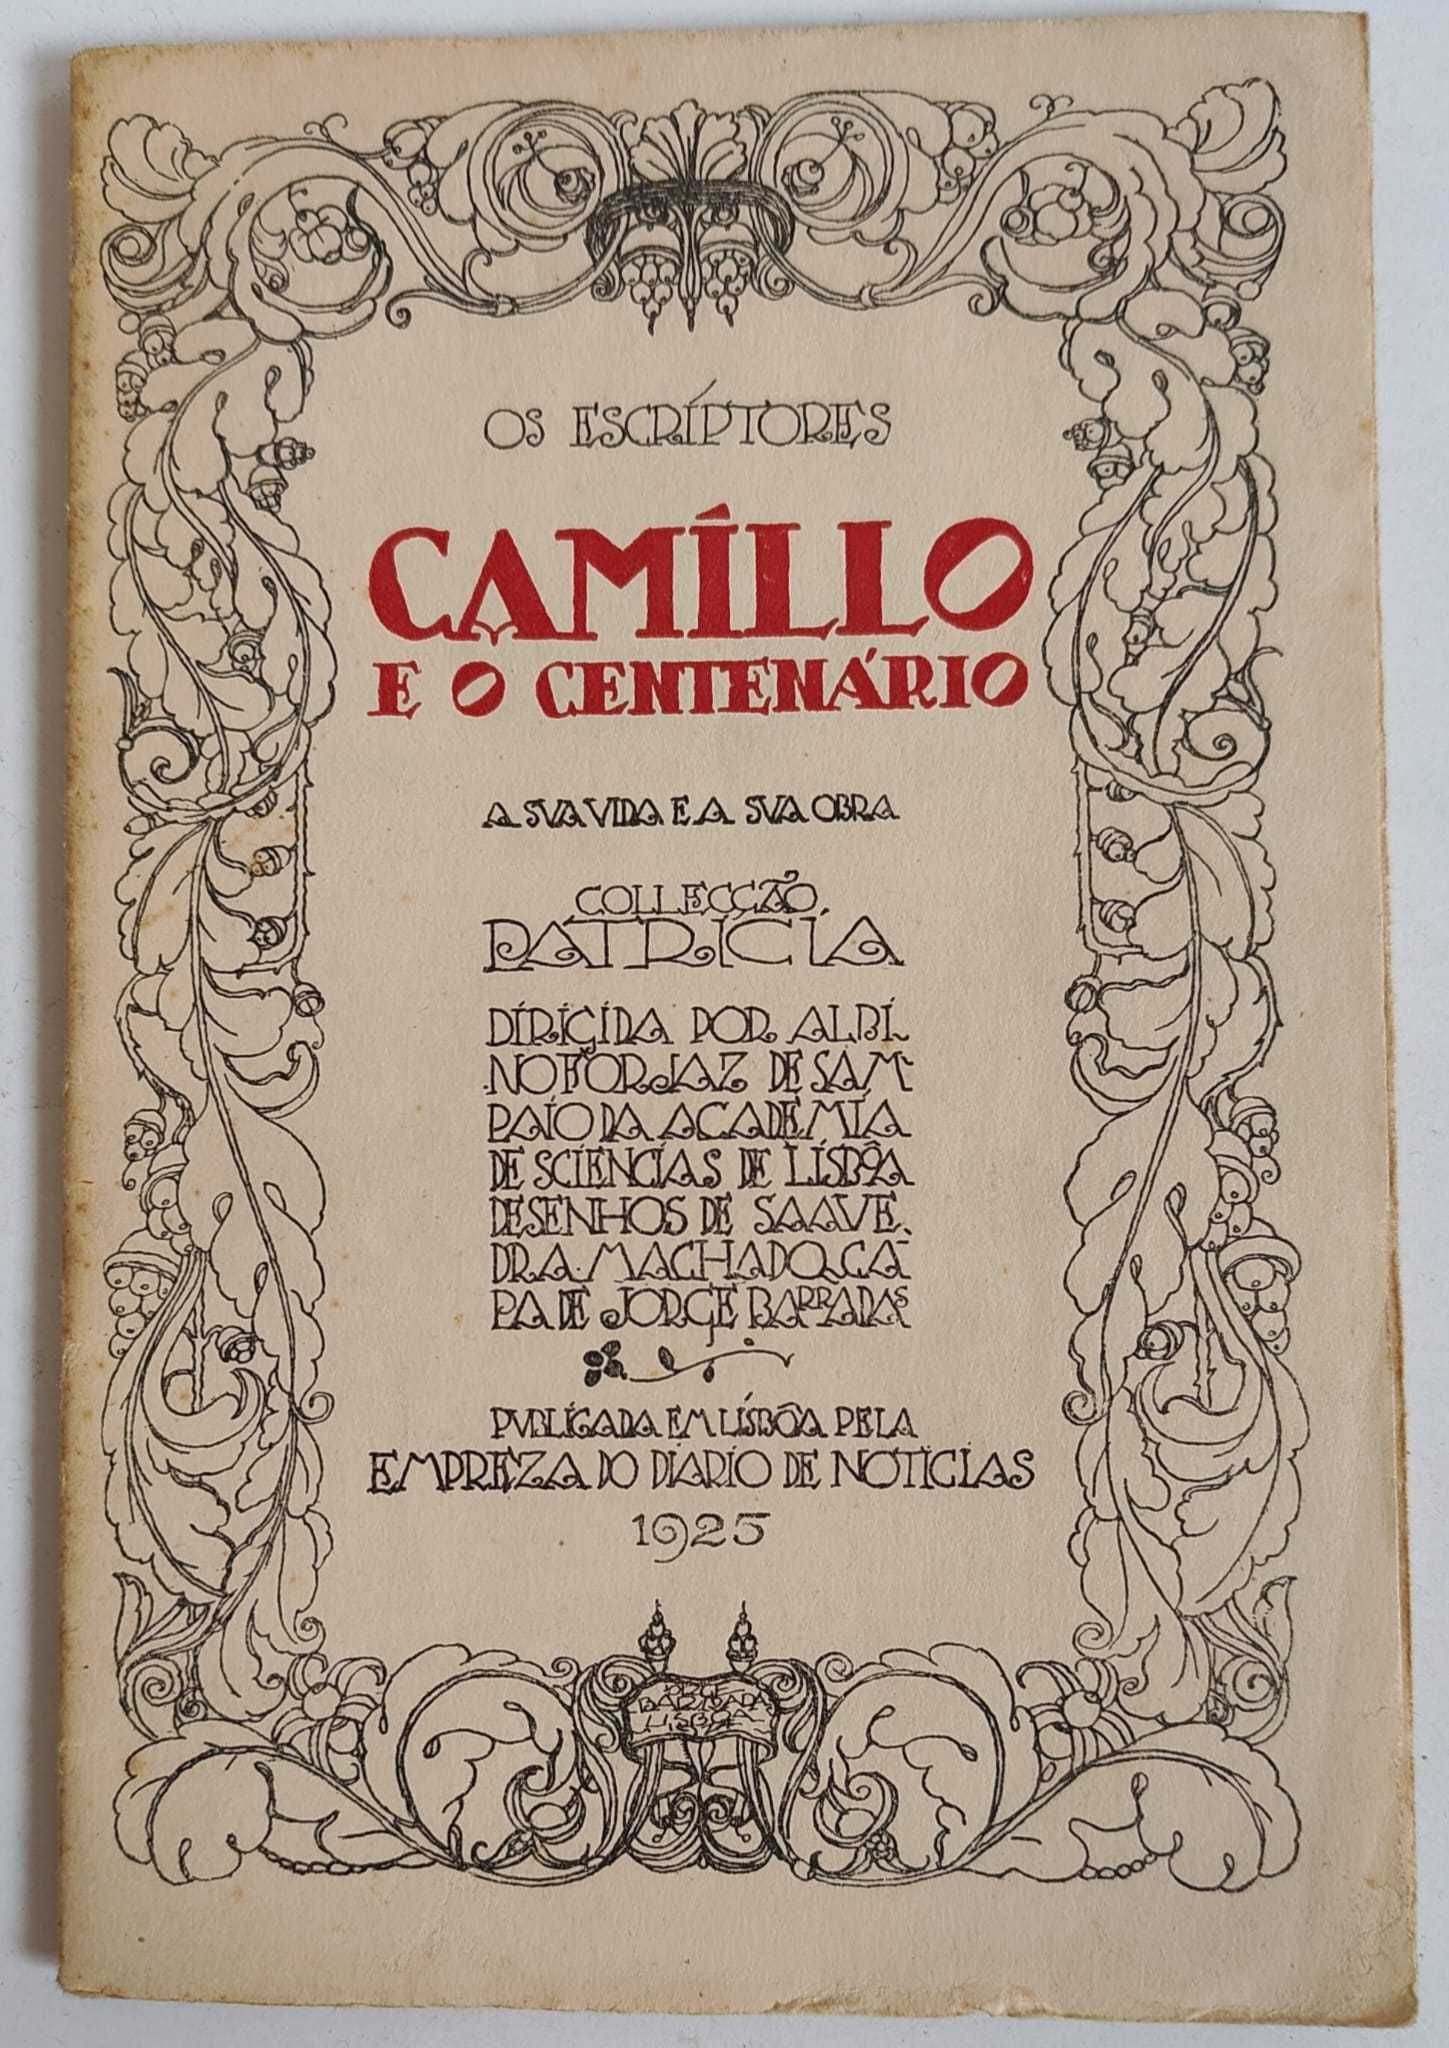 COLECÇÃO PATRICIA: Camillo e o Centenário (1925) Augusto Gil (1927)